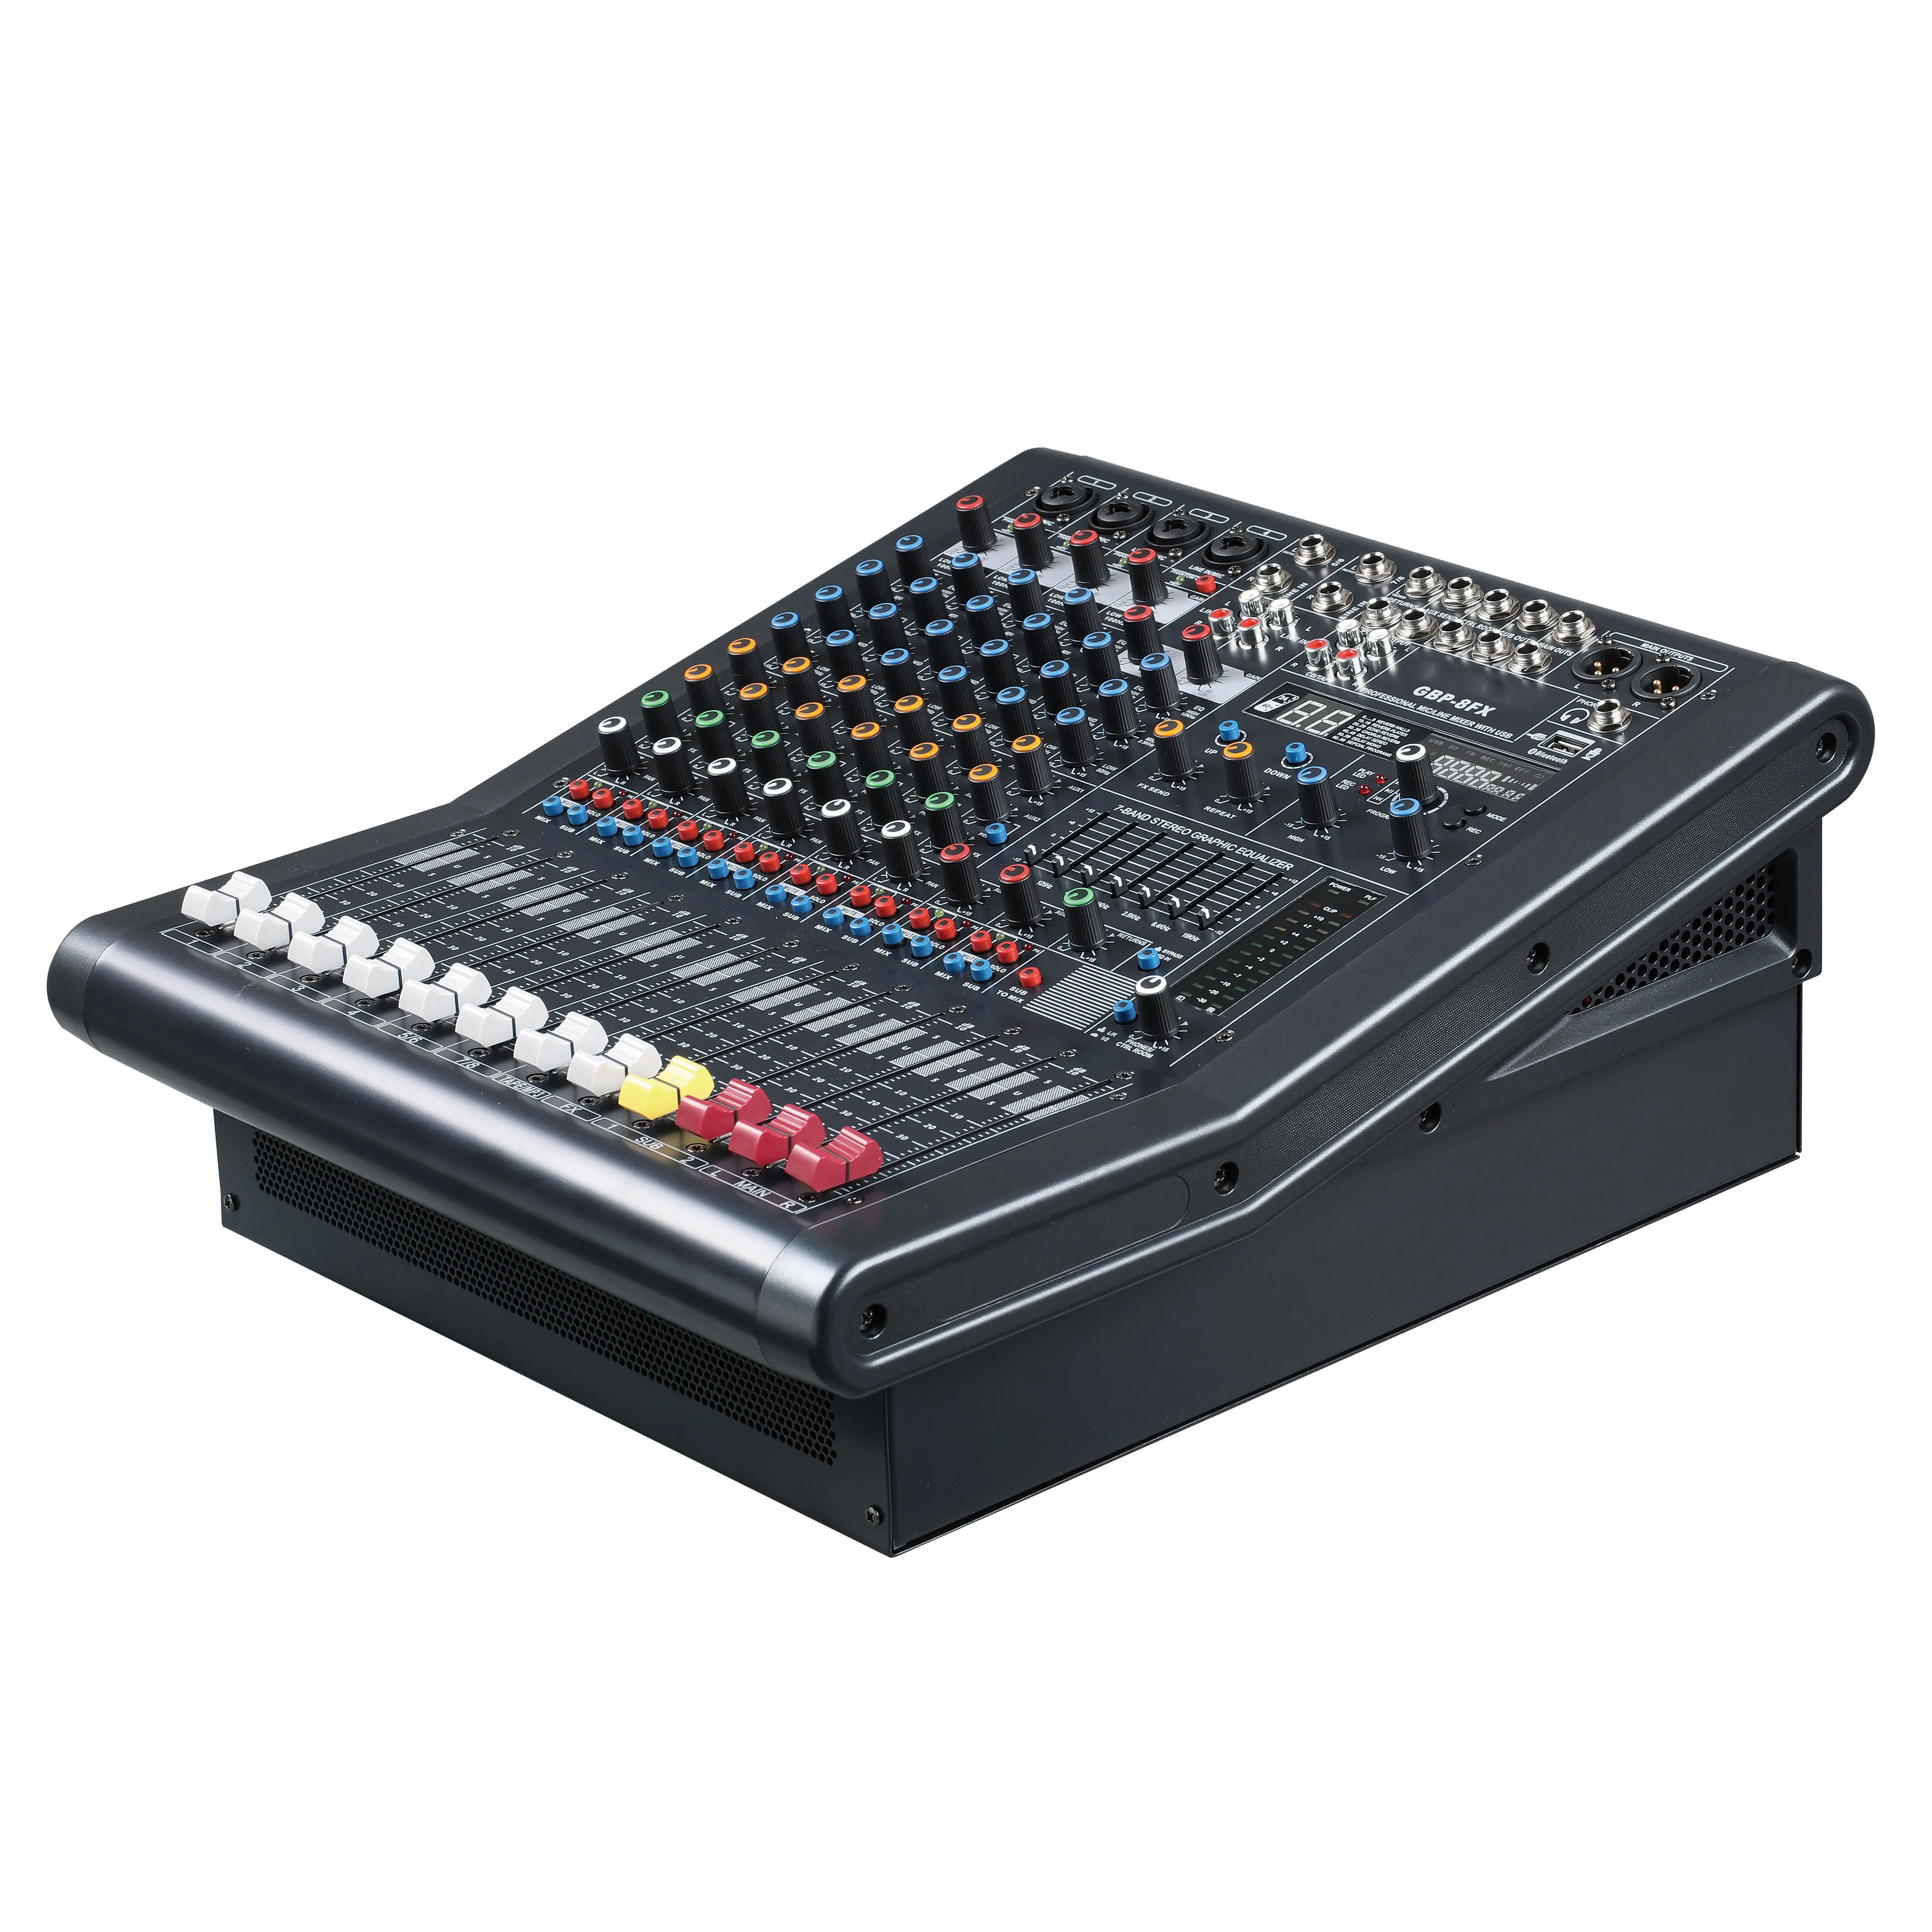 Sistema de pa profissional, de alta qualidade oem 16 canais digital de placa de som console de mistura de áudio console mixer